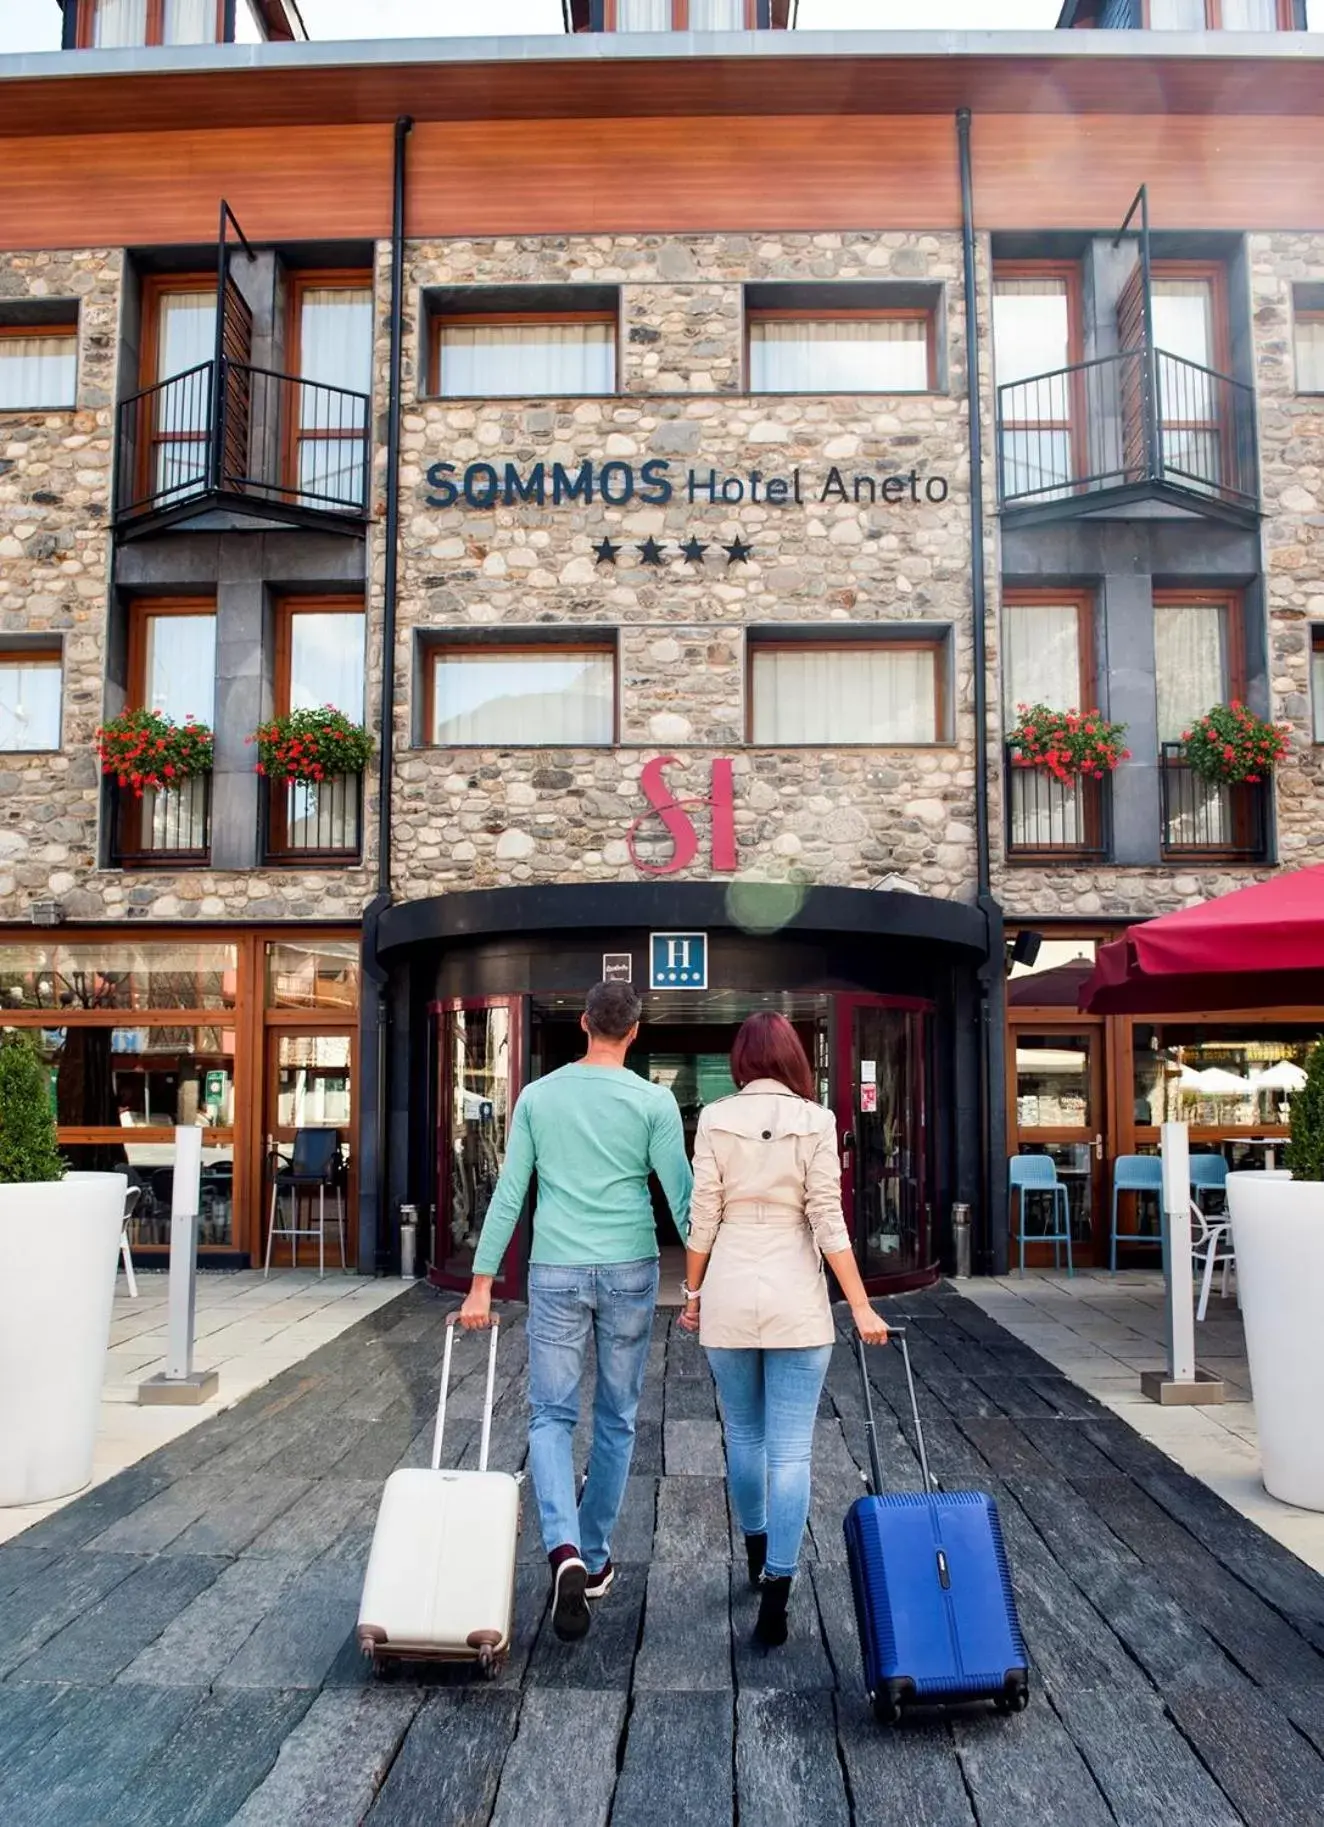 Facade/entrance in SOMMOS Hotel Aneto